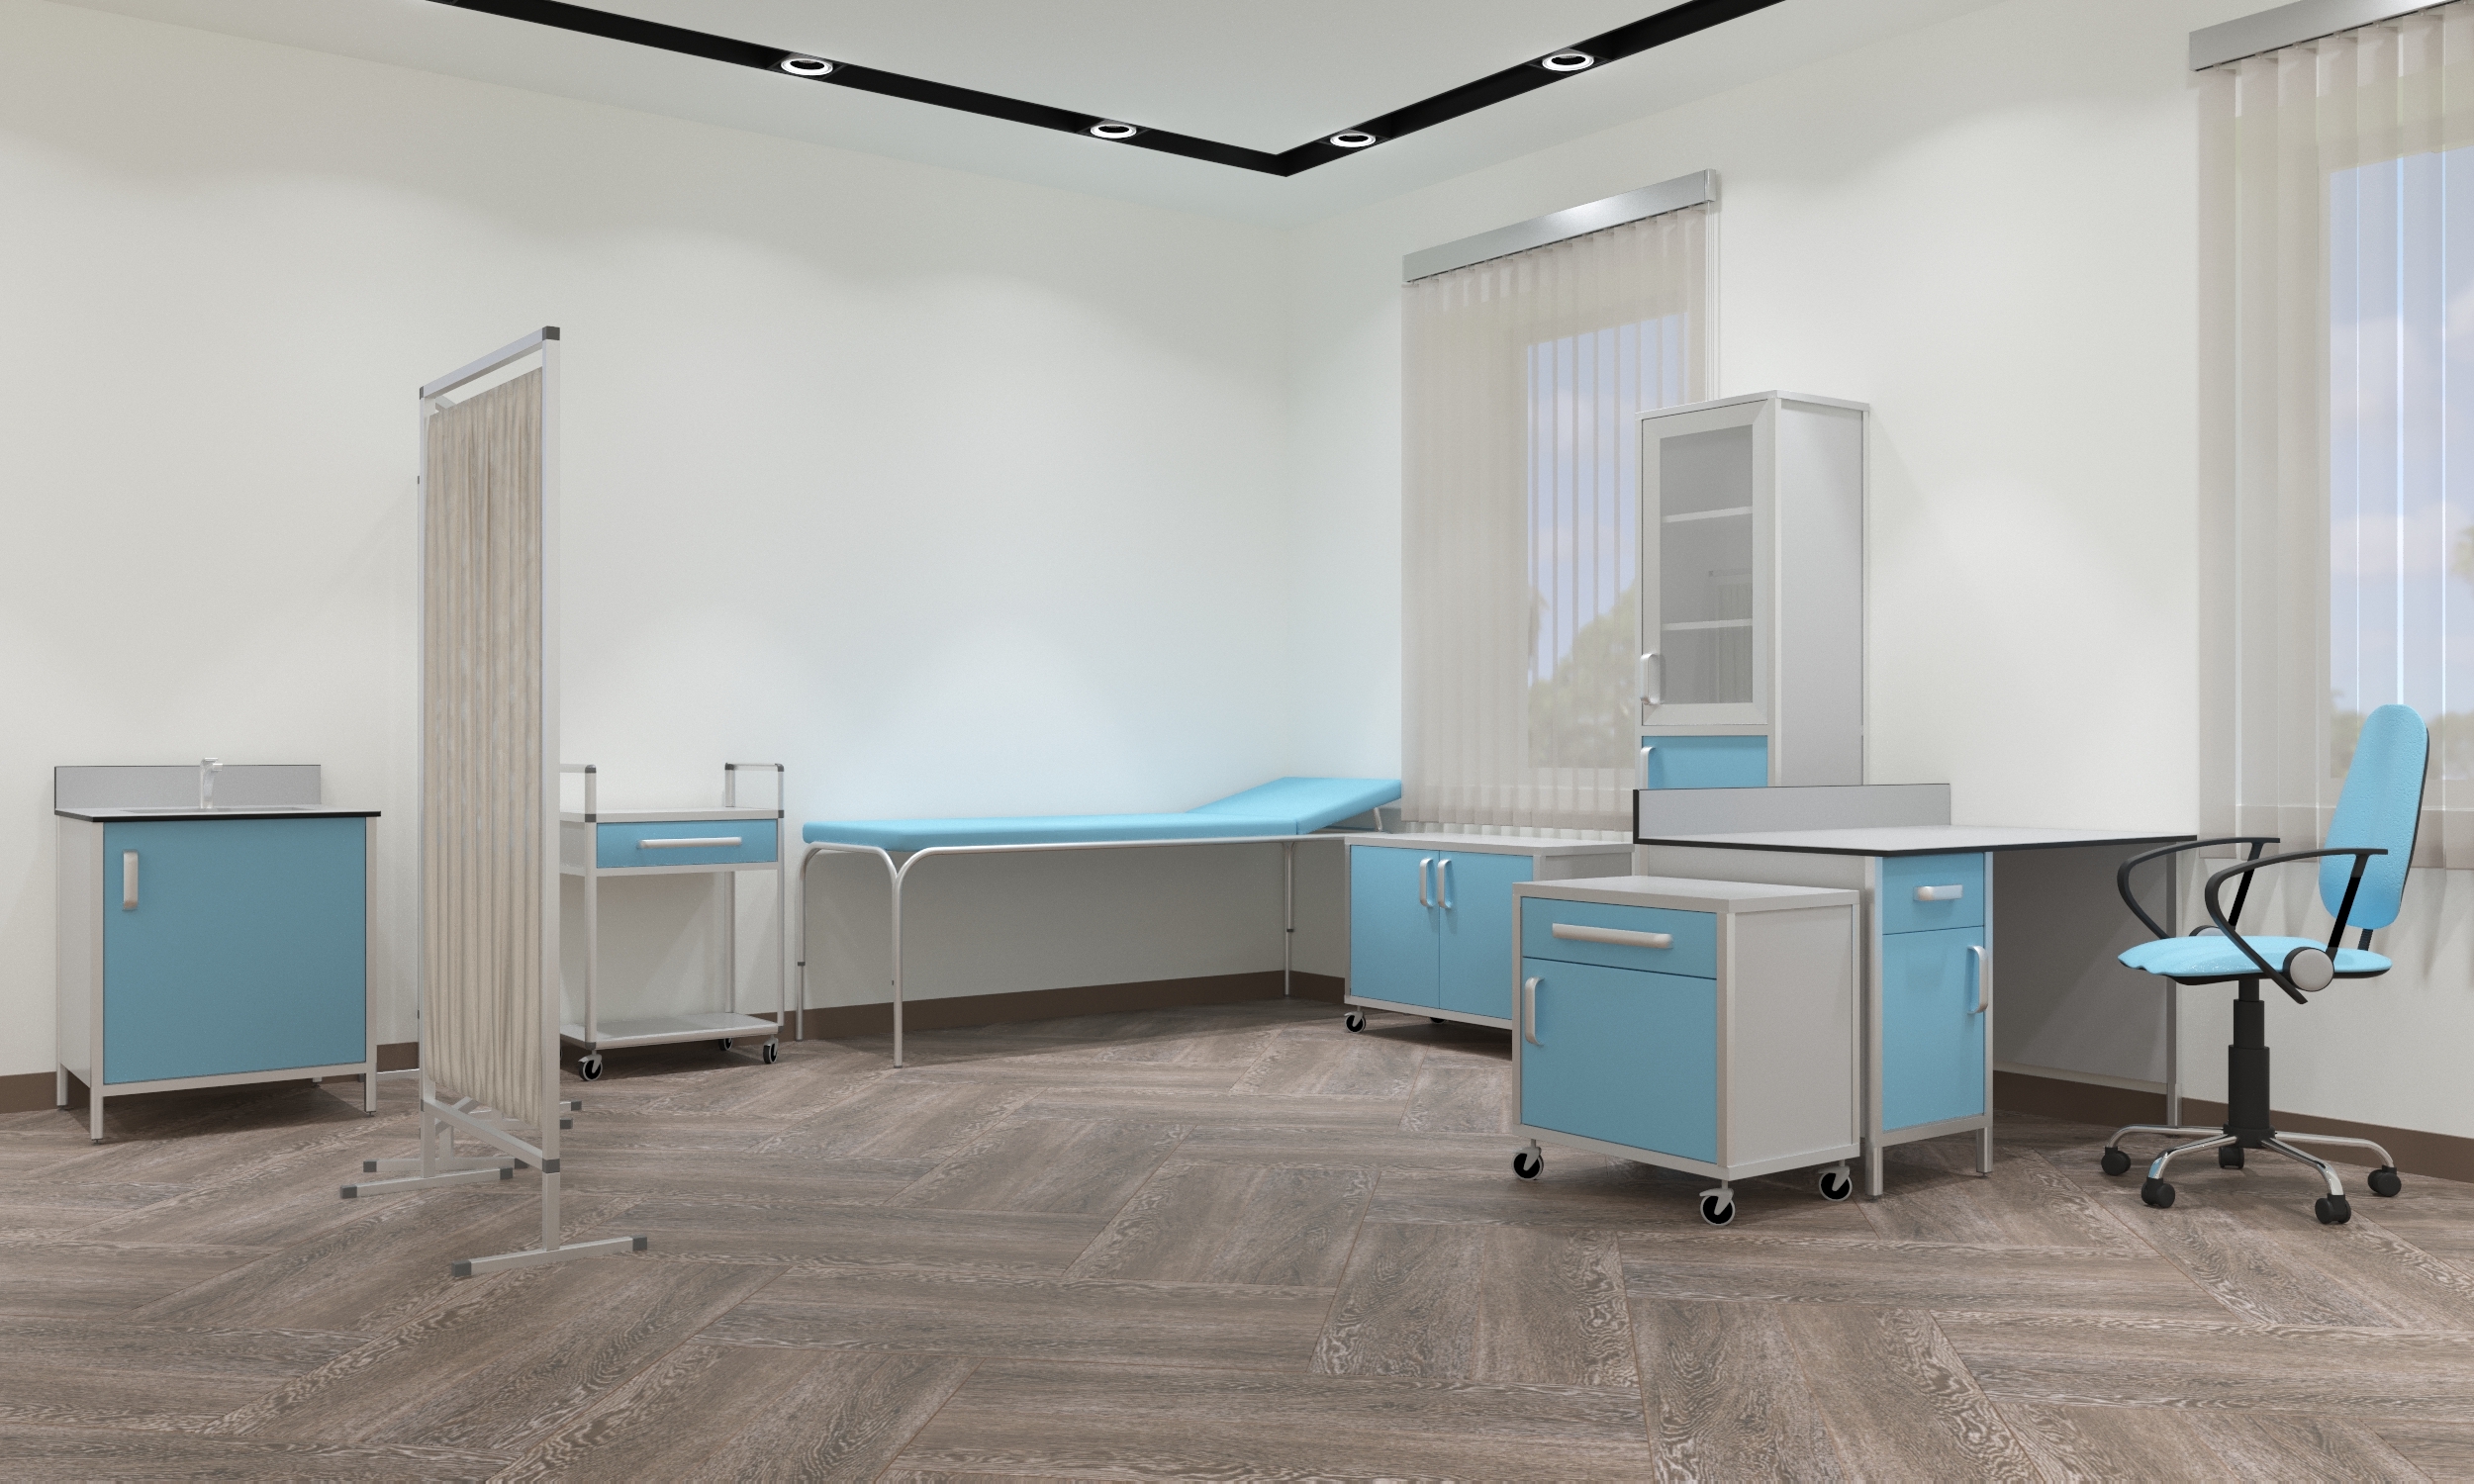 Медицинская мебель и стерильность в медицинских учреждениях